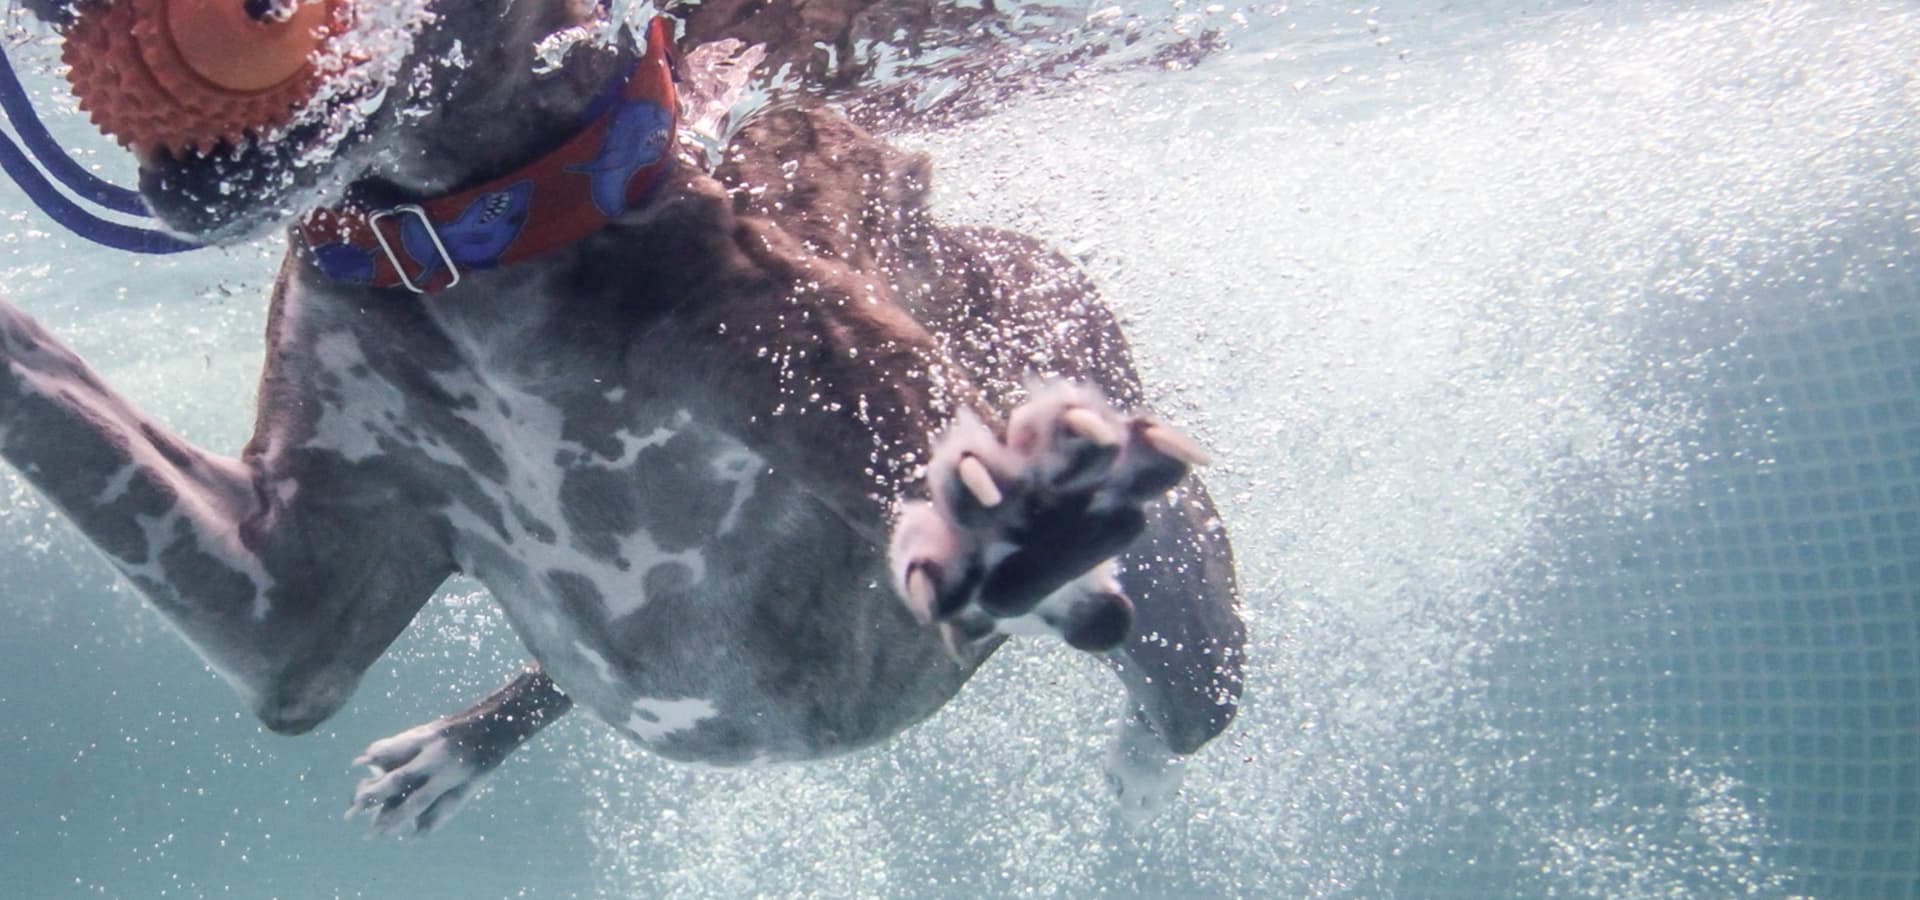 Hund mit Spielzeug im Mund unter Wasser fotografiert